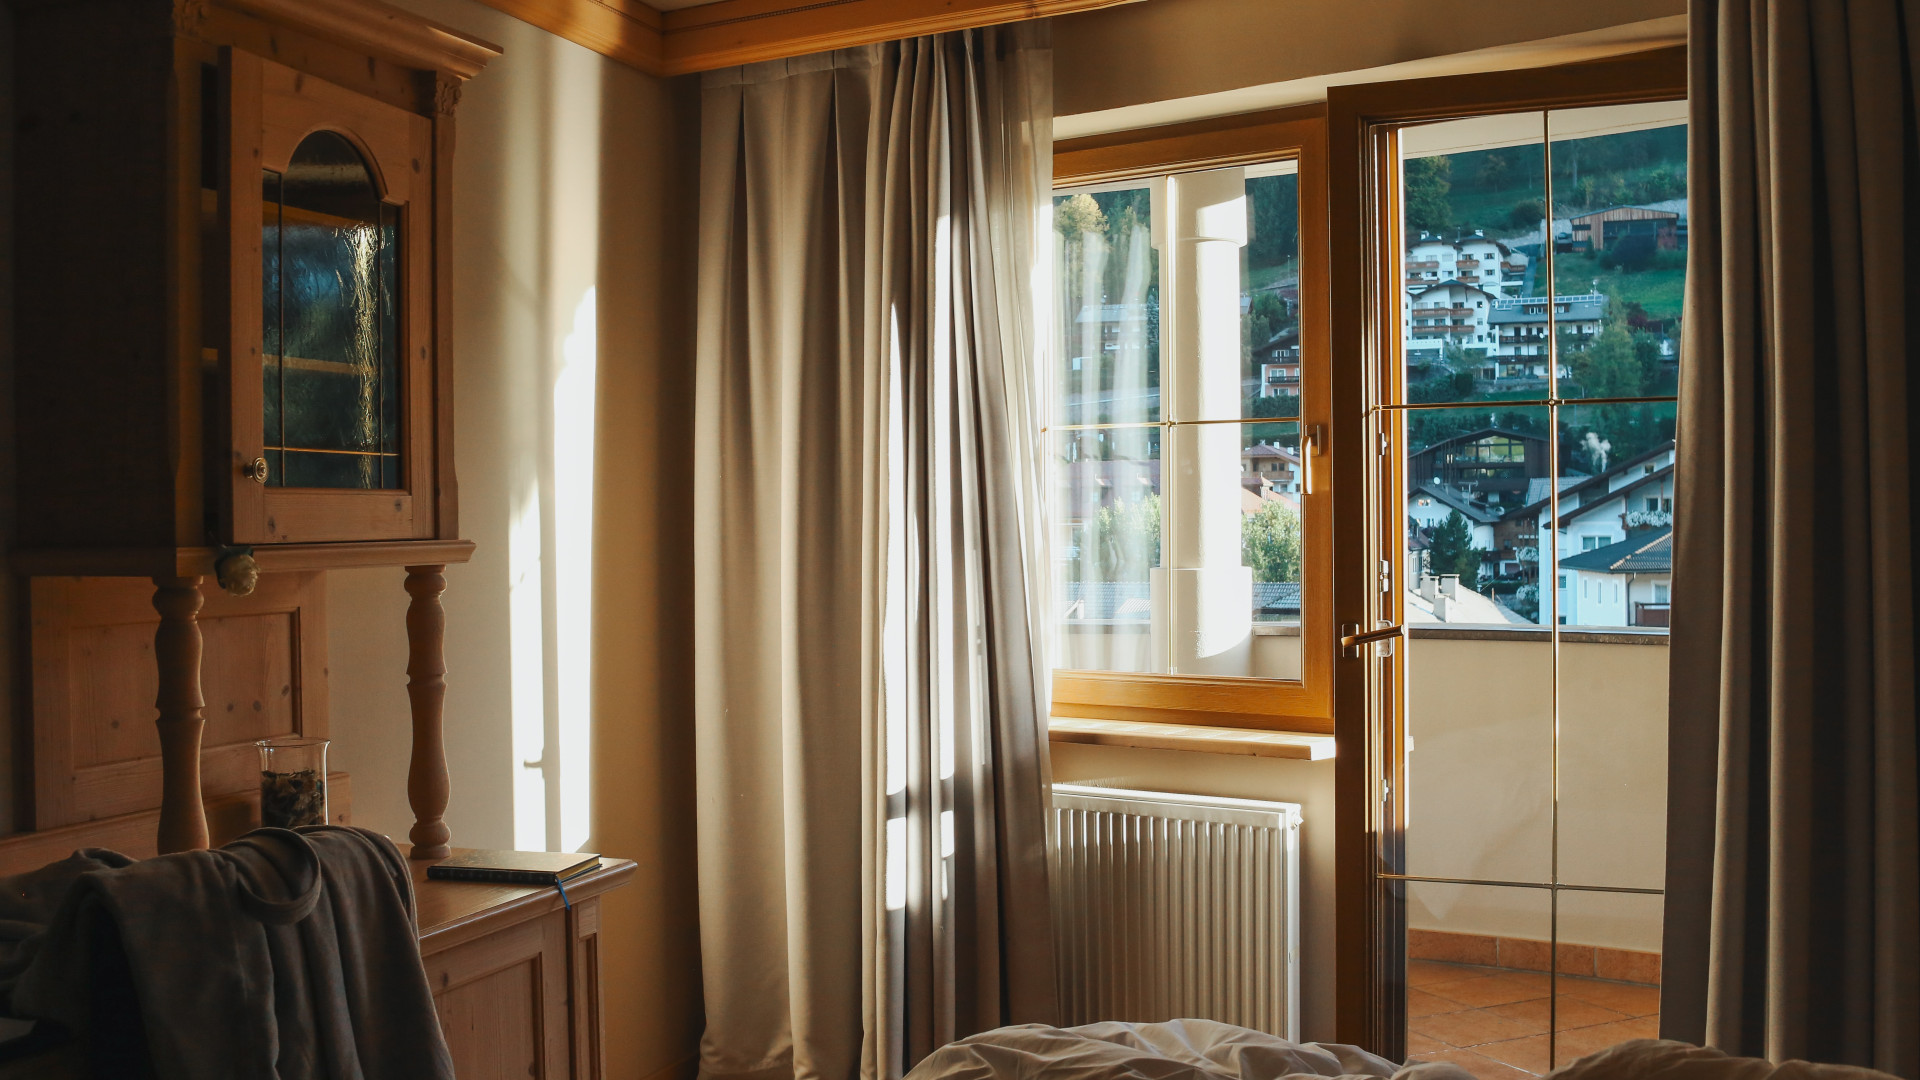 Transformez votre intérieur : optez pour une fenêtre en baie vitrée !